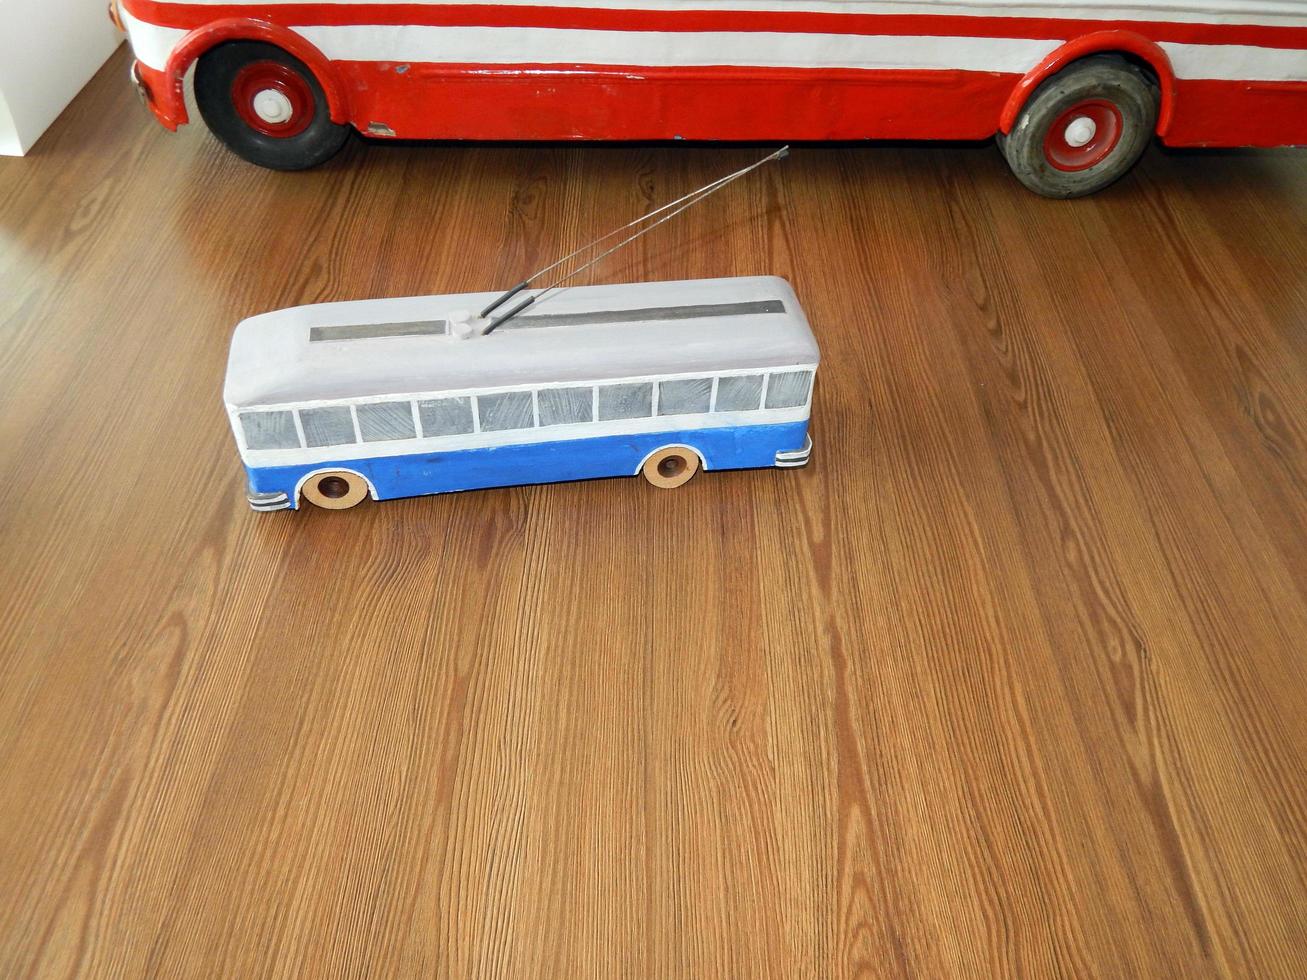 modellen van trolleybussen, modellen van elektrisch stadsvervoer foto